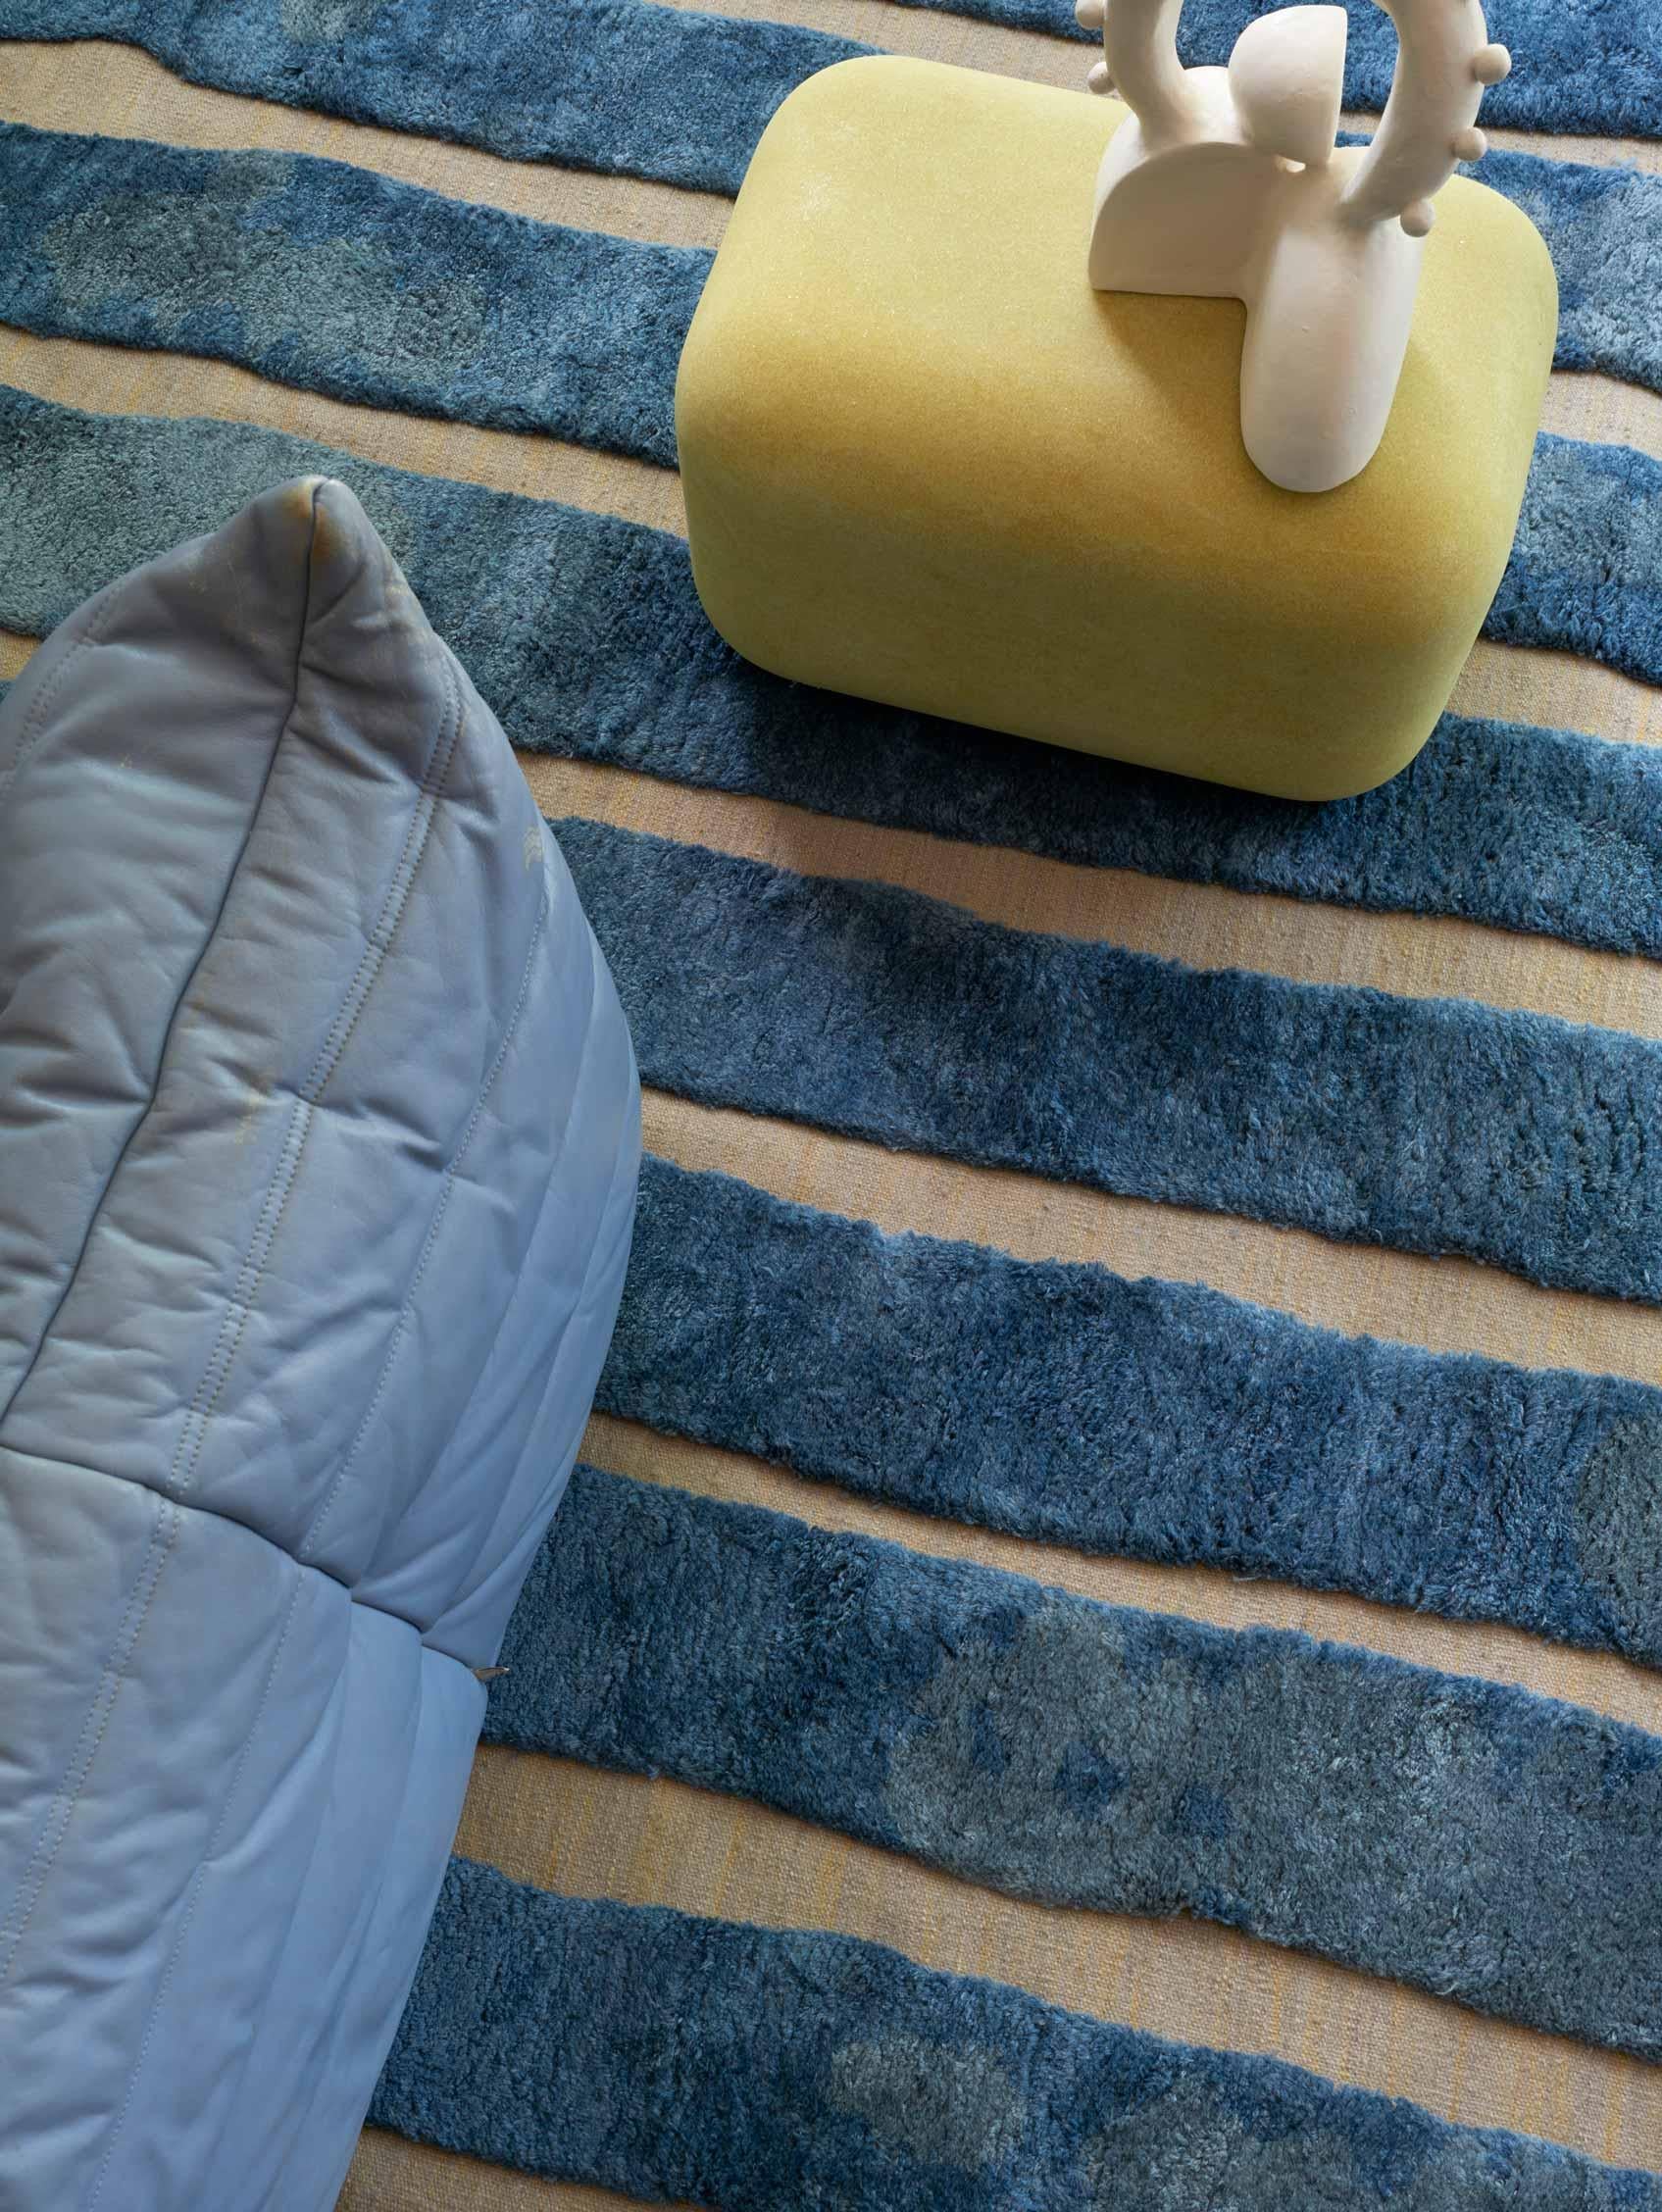 Motif du tapis : Bold Stripe - Thalassa
MATERIAL : Poil de laine mérinos/ Laine de Nouvelle-Zélande tissée à plat
Qualité : Laine tissée à plat et poils marocains, poils de 10 mm, tissés à la main. 
Taille : 8'-0